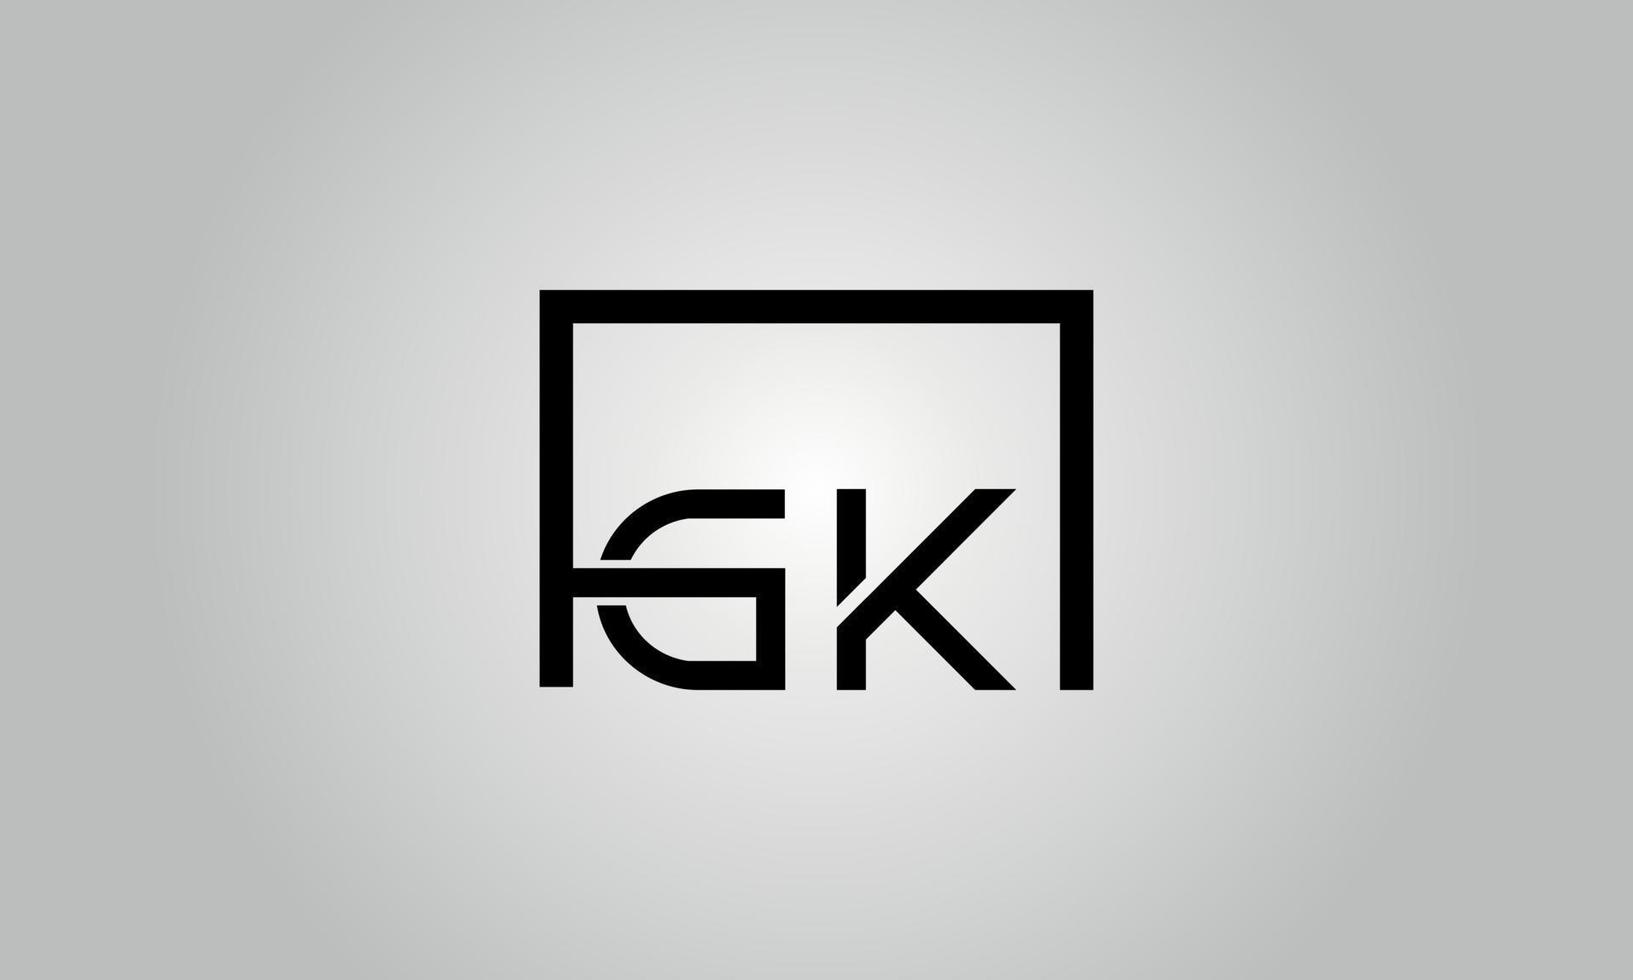 brief gk logo ontwerp. gk logo met plein vorm in zwart kleuren vector vrij vector sjabloon.